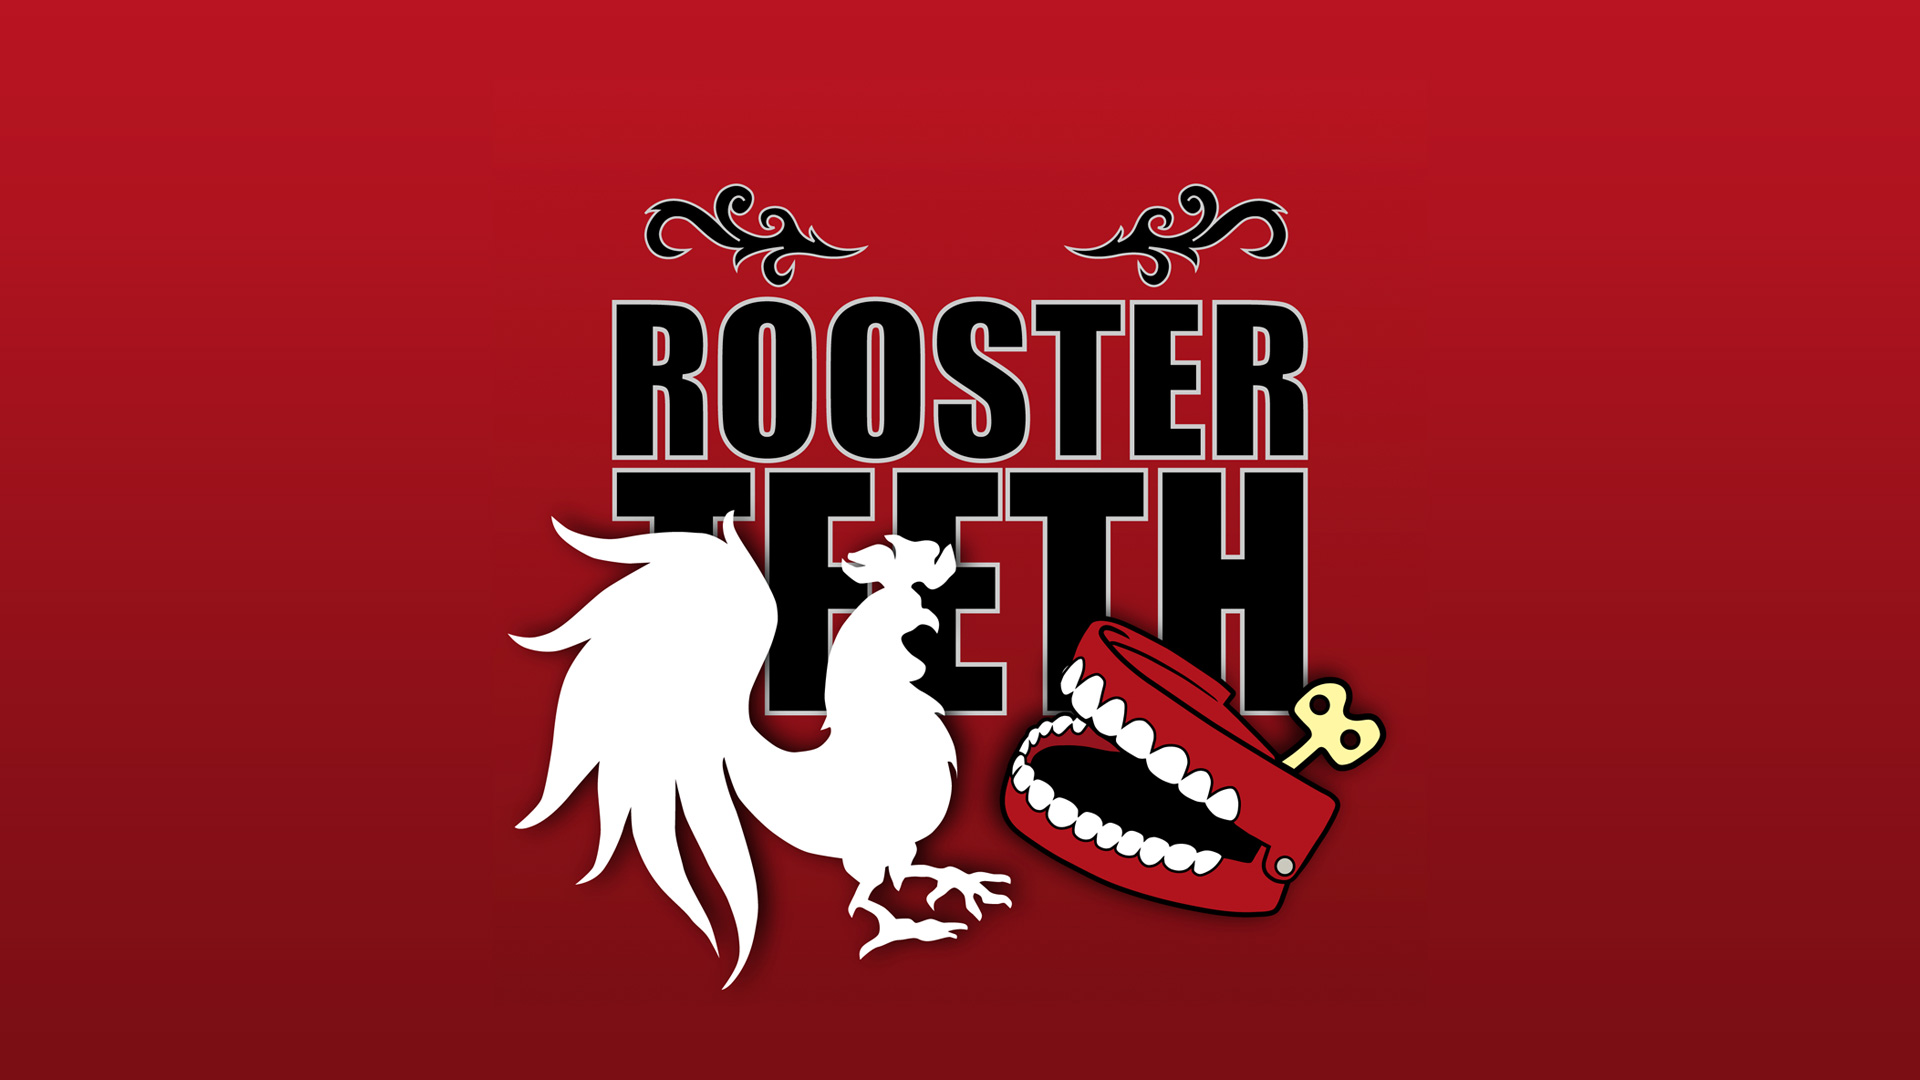 Rooster teeth kaden